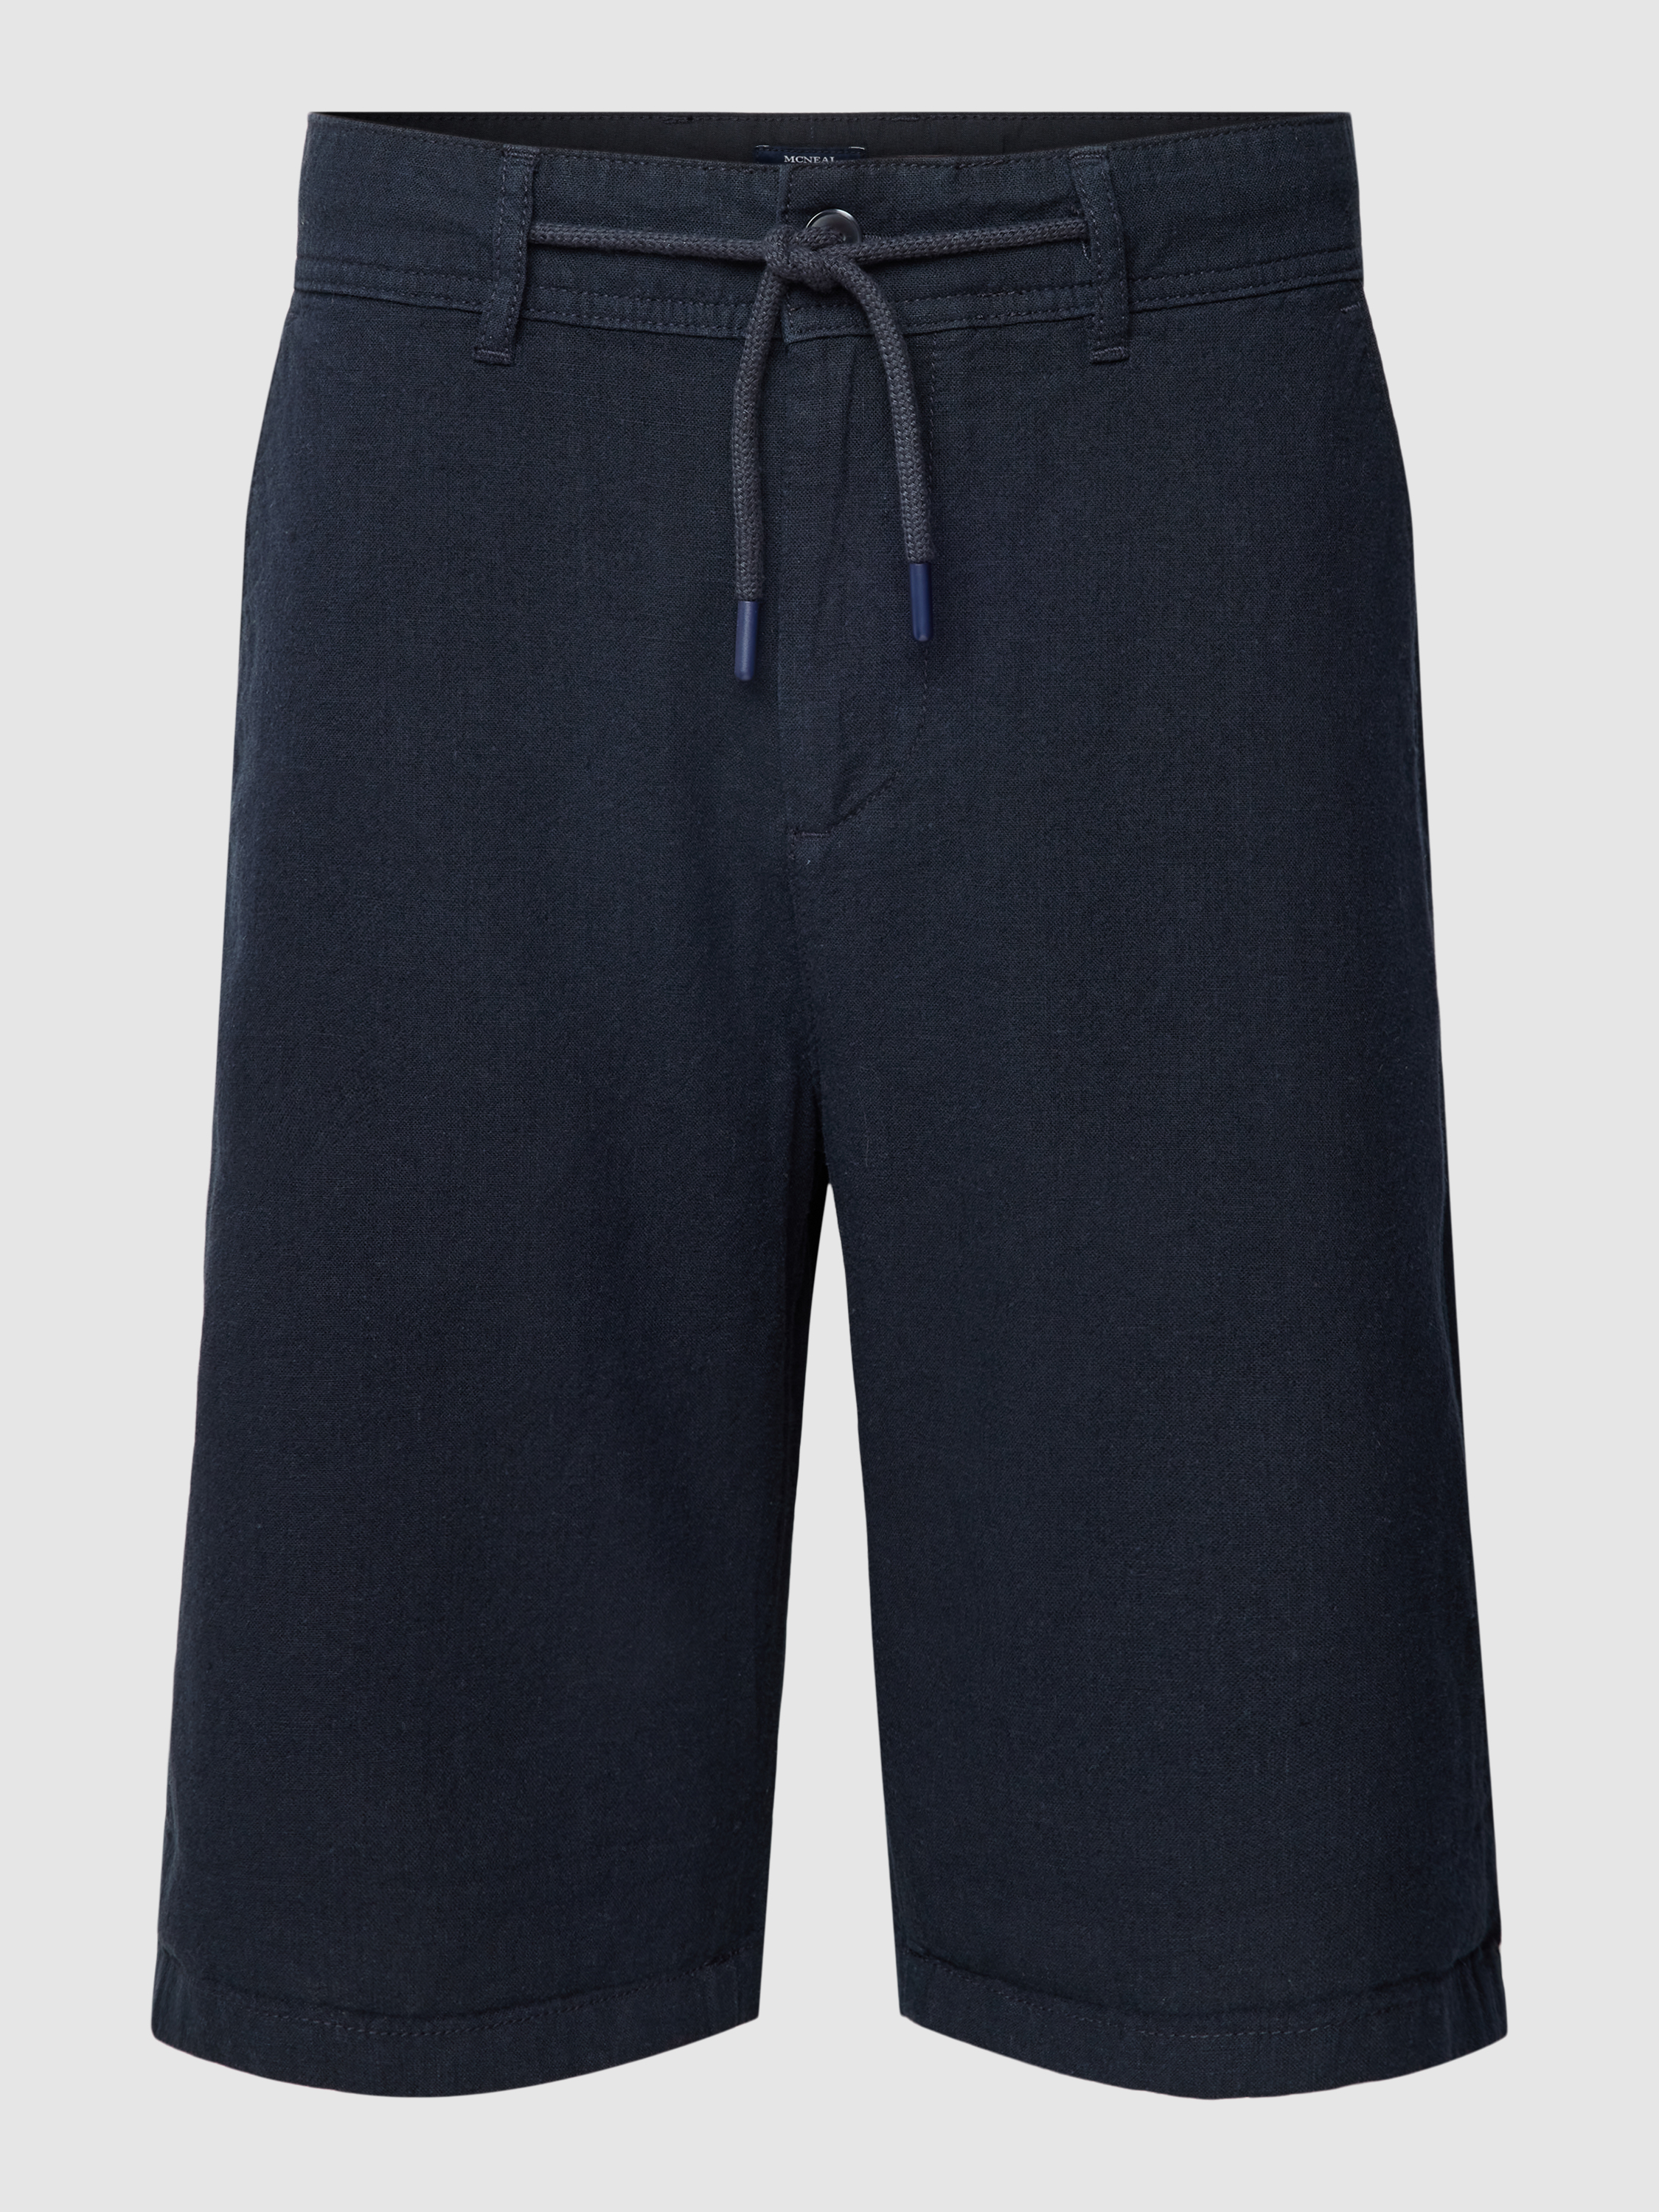 Повседневные шорты мужские McNeal 1768493 синие L (доставка из-за рубежа)